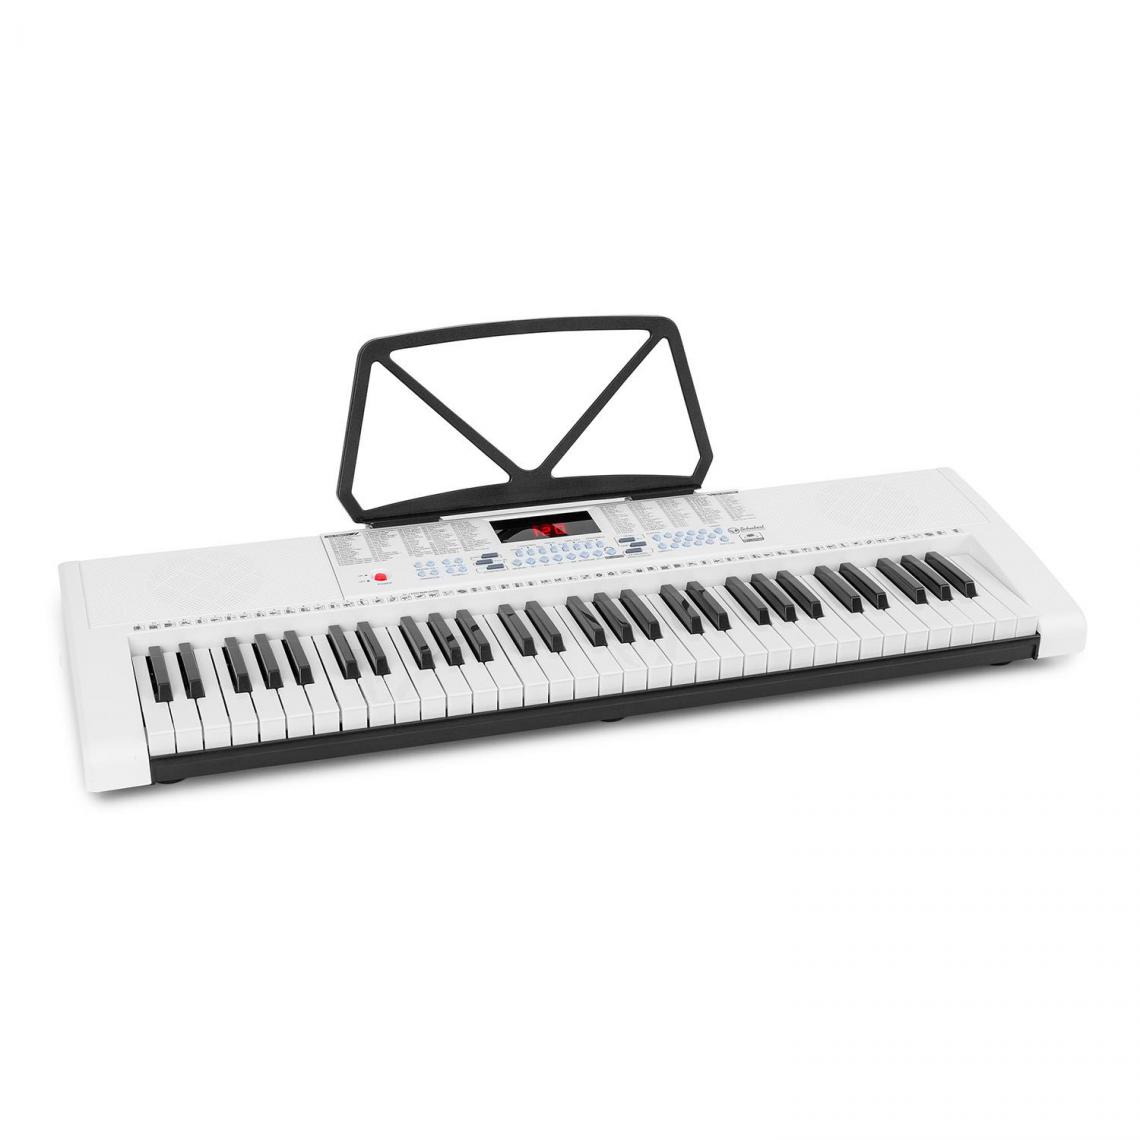 Schubert - Clavier d'apprentissage SCHUBERT Etude 255 LCD avec 61 touches, affichage LCD, touches éclairées255 rythmes - Pianos numériques